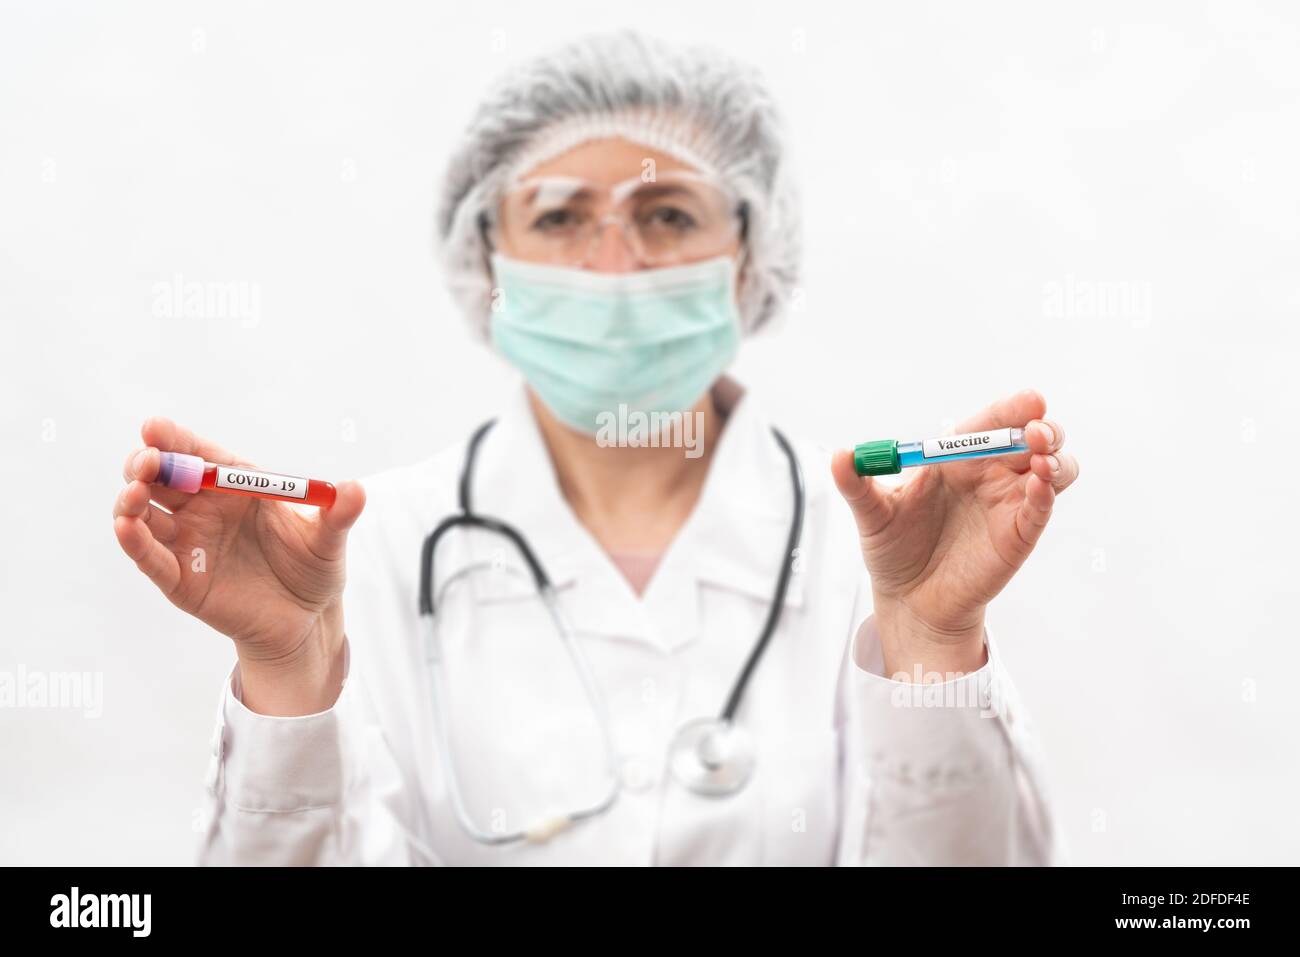 Infirmier médical sur fond blanc, montre compare, tube à essai avec des bactéries virales et virus Banque D'Images